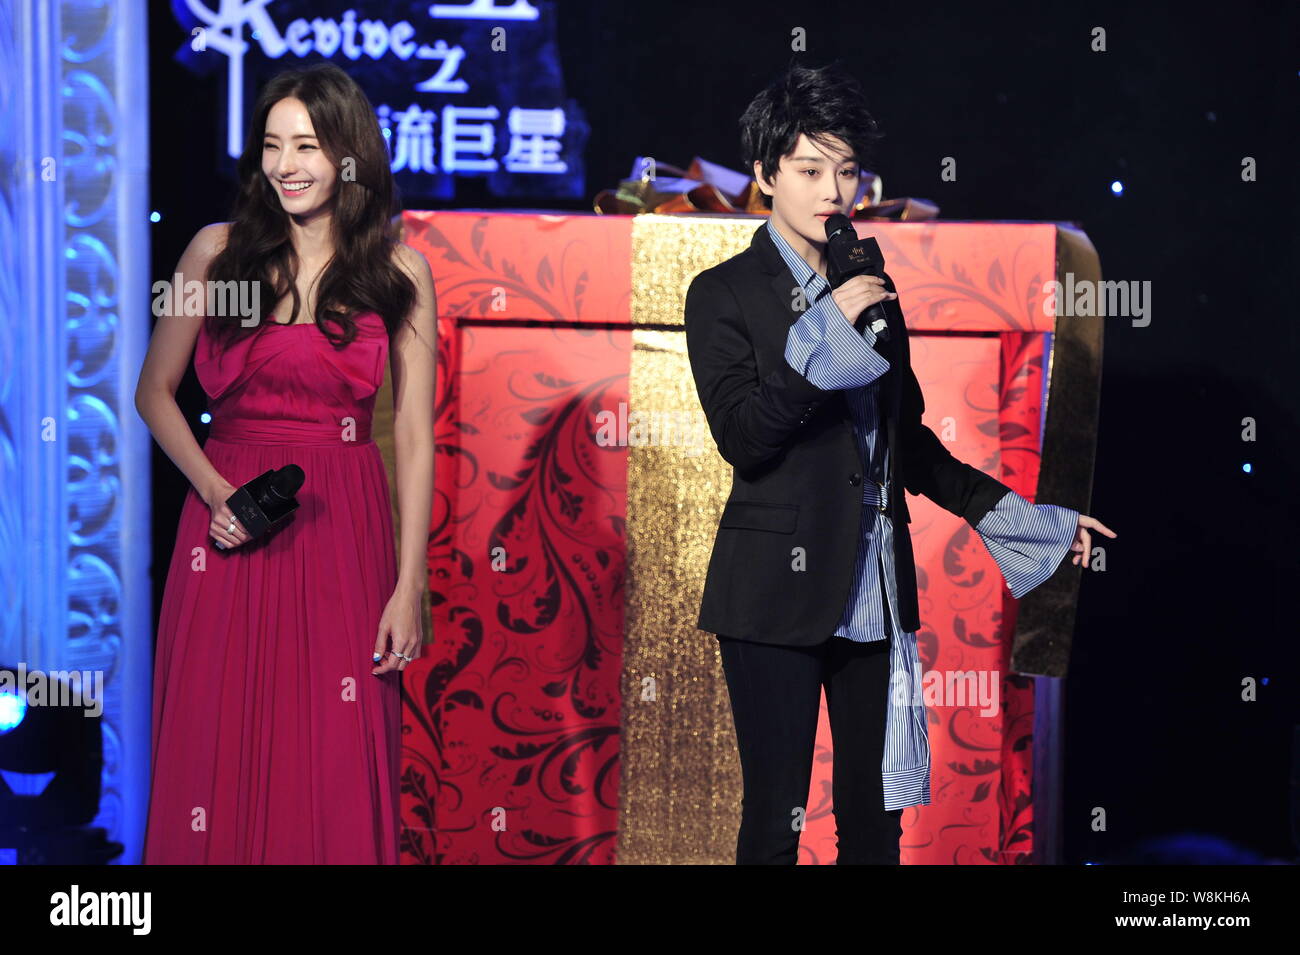 Koreanische Schauspielerin Han Chae-young, Links, und chinesische Schauspielerin Zhang Xinyu eine Pressekonferenz für Ihre TV-Drama 'Phönix' in Peking, China, 23. teilnehmen Stockfoto